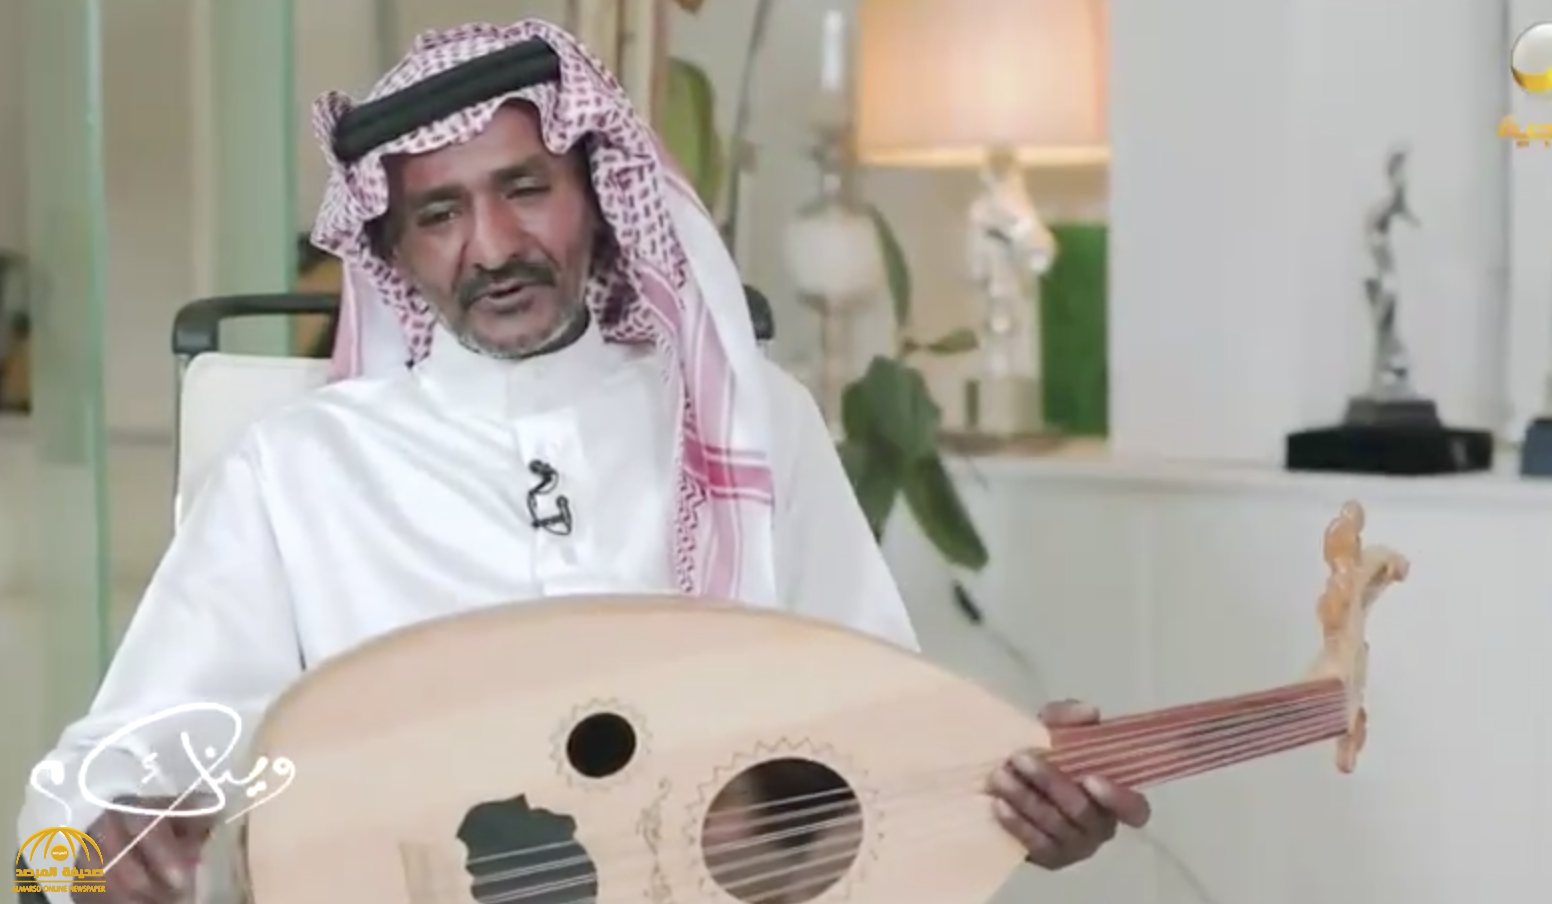 شاهد: الملحن "العيسى" يروي كيف تعرف على خالد عبدالرحمن .. وقصة لحن الأغنية الشهيرة "دق البخت بابي"